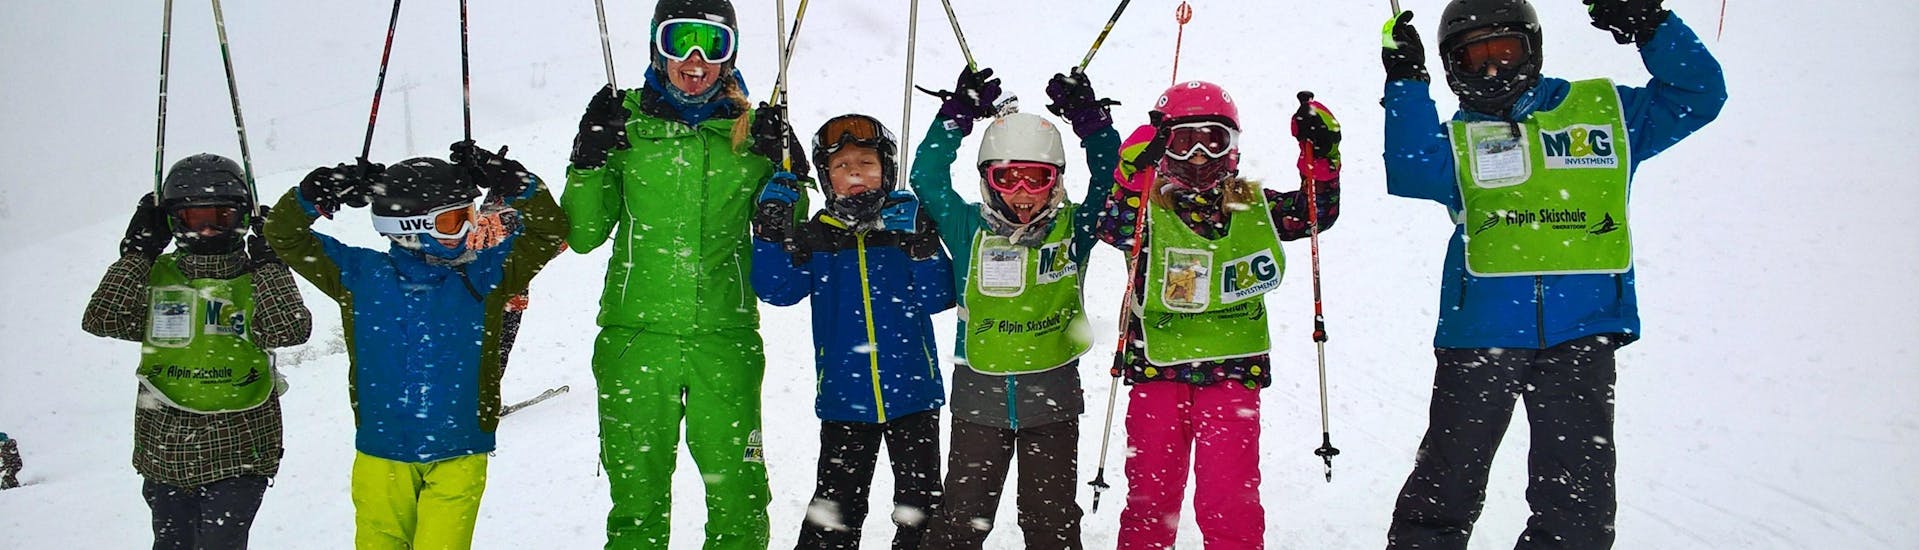 Eine Gruppe glücklicher Kinder im Kinder Skikurs (9-16 Jahre) - Fortgeschritten mit ihrer Skilehrerin von der Skischule Alpin Skischule Oberstdorf.